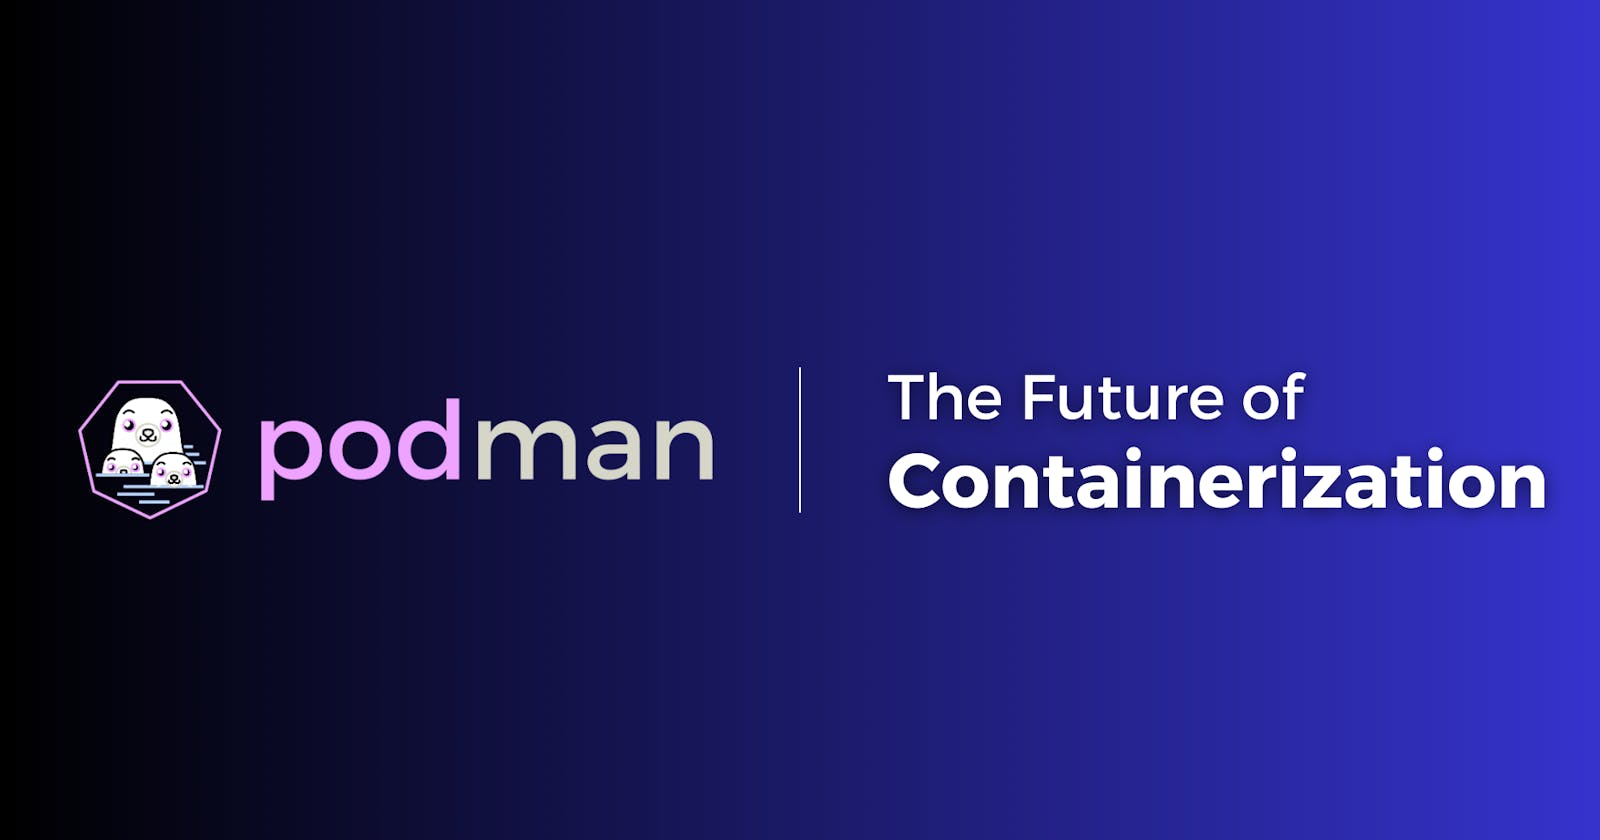 Podman: The Future of Containerization